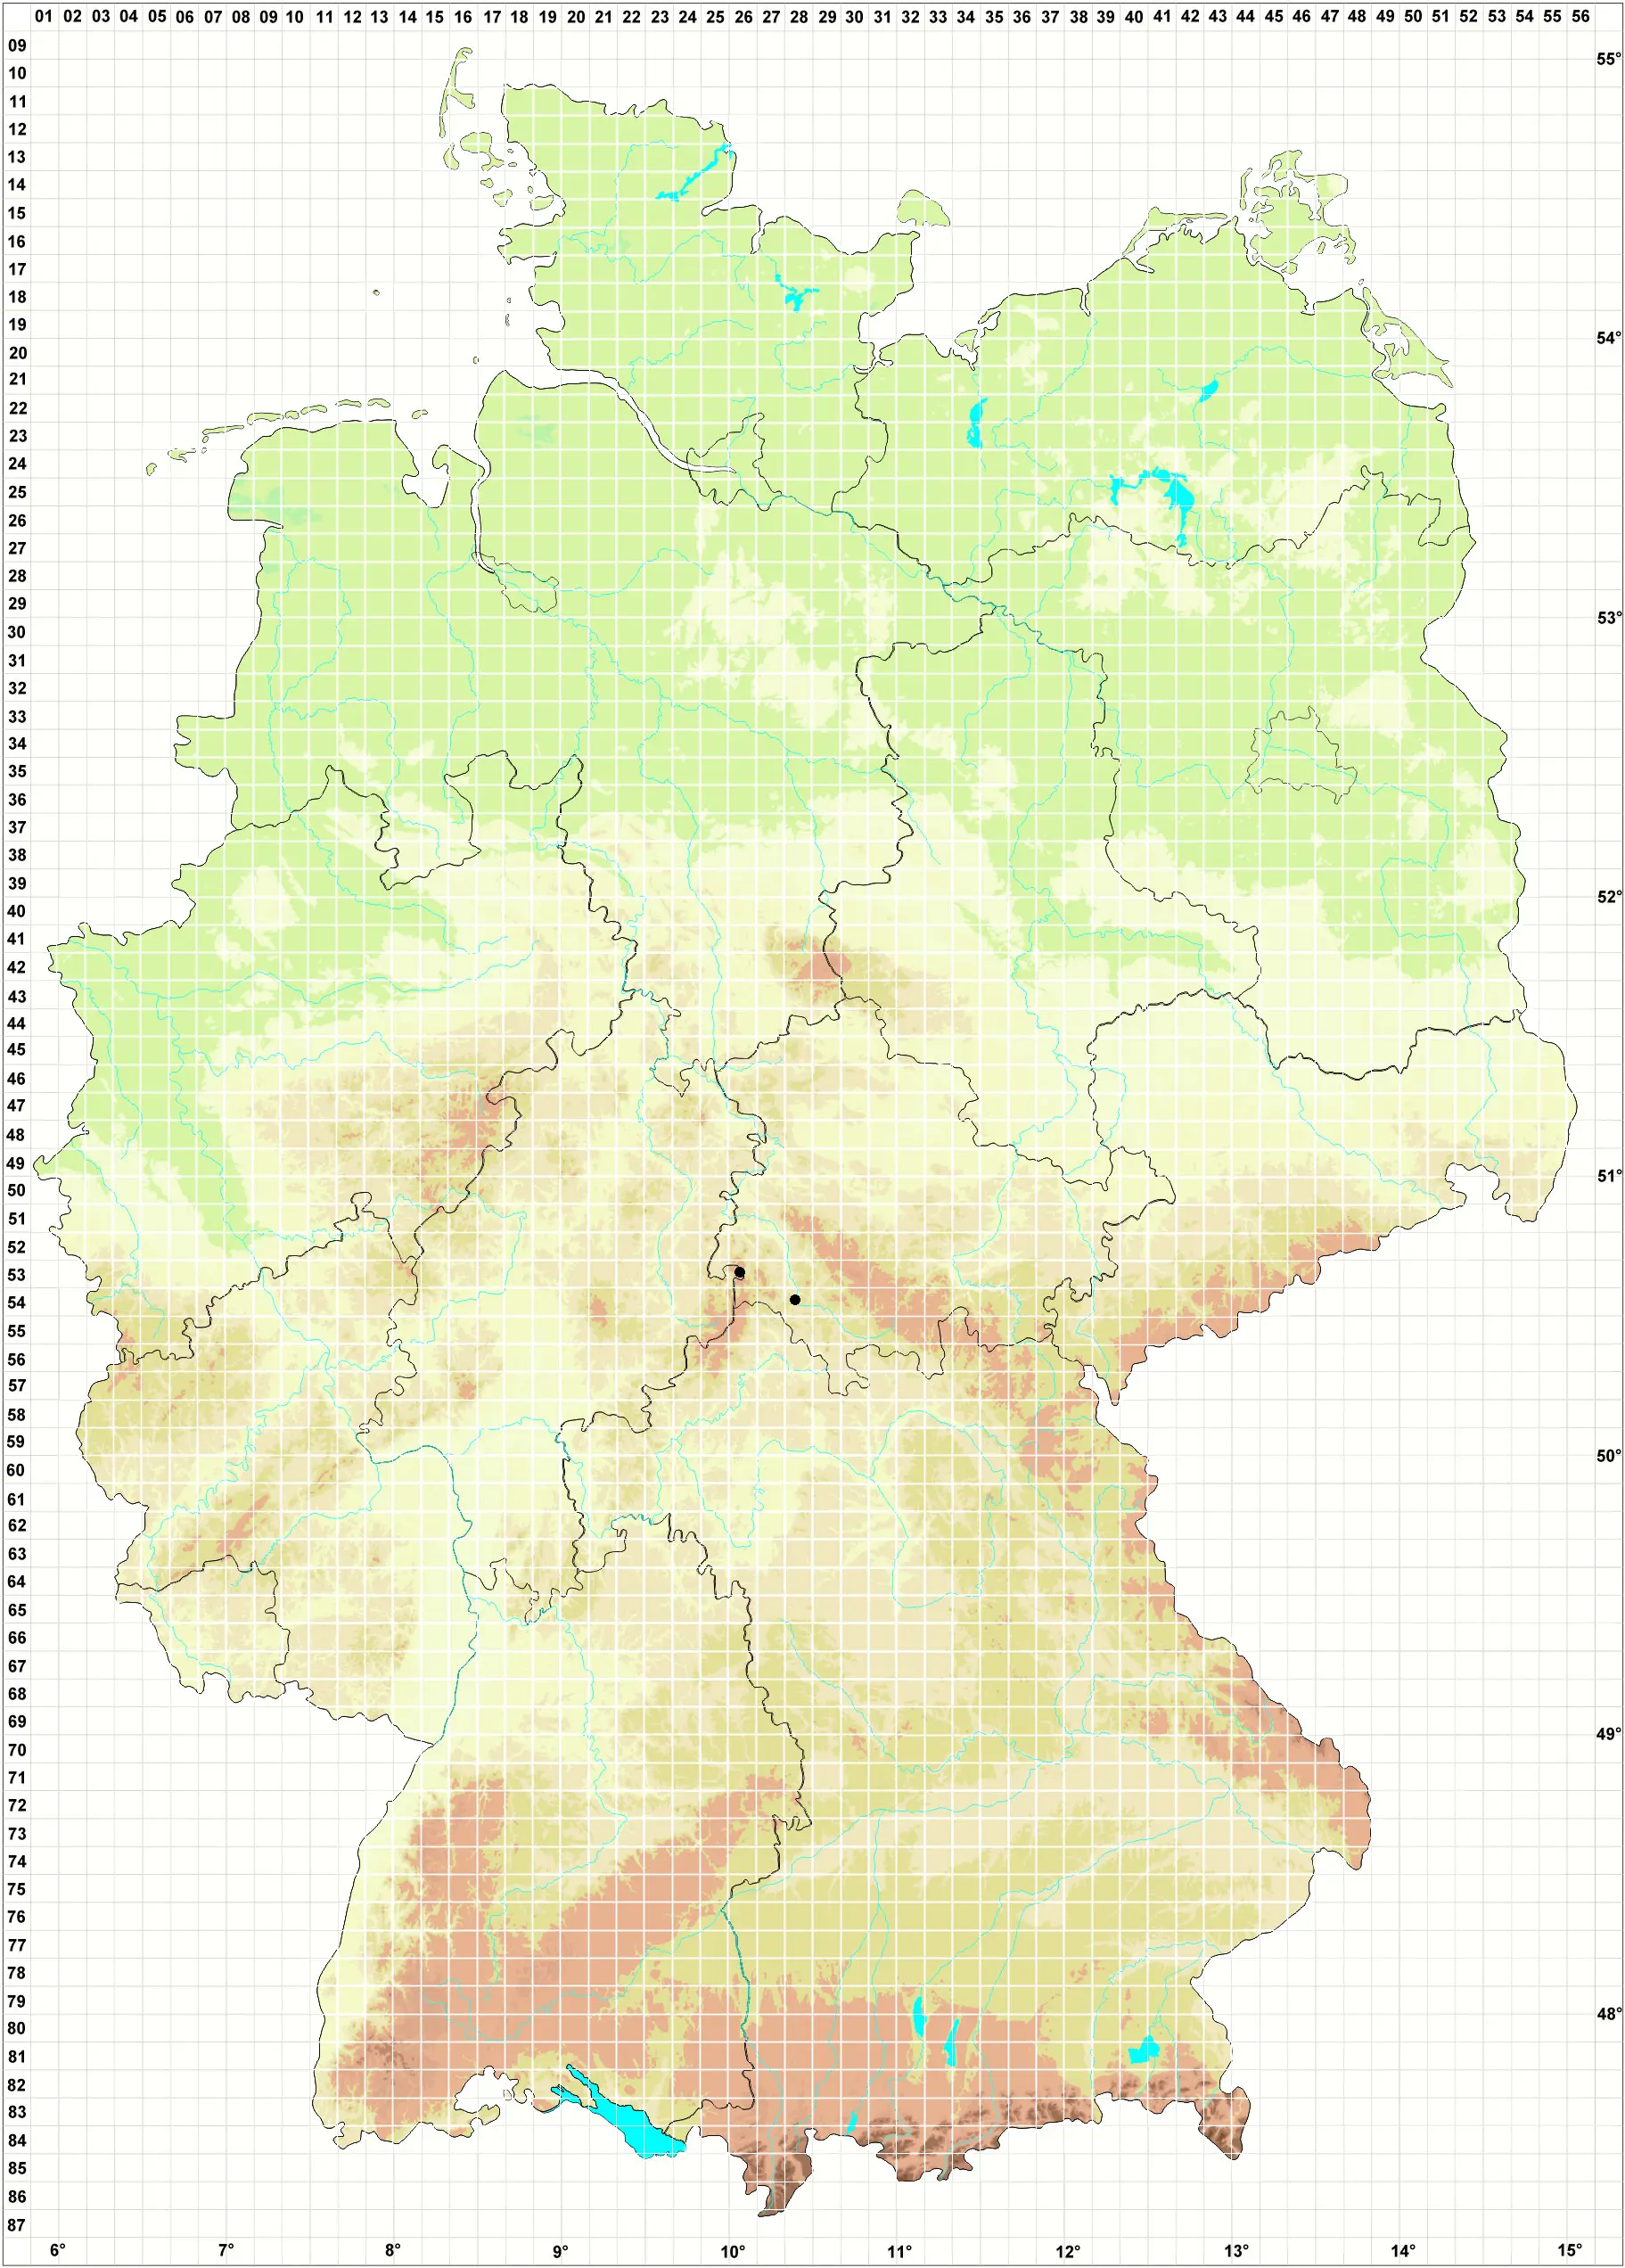 Karte H. Grünberg 08.06.2010